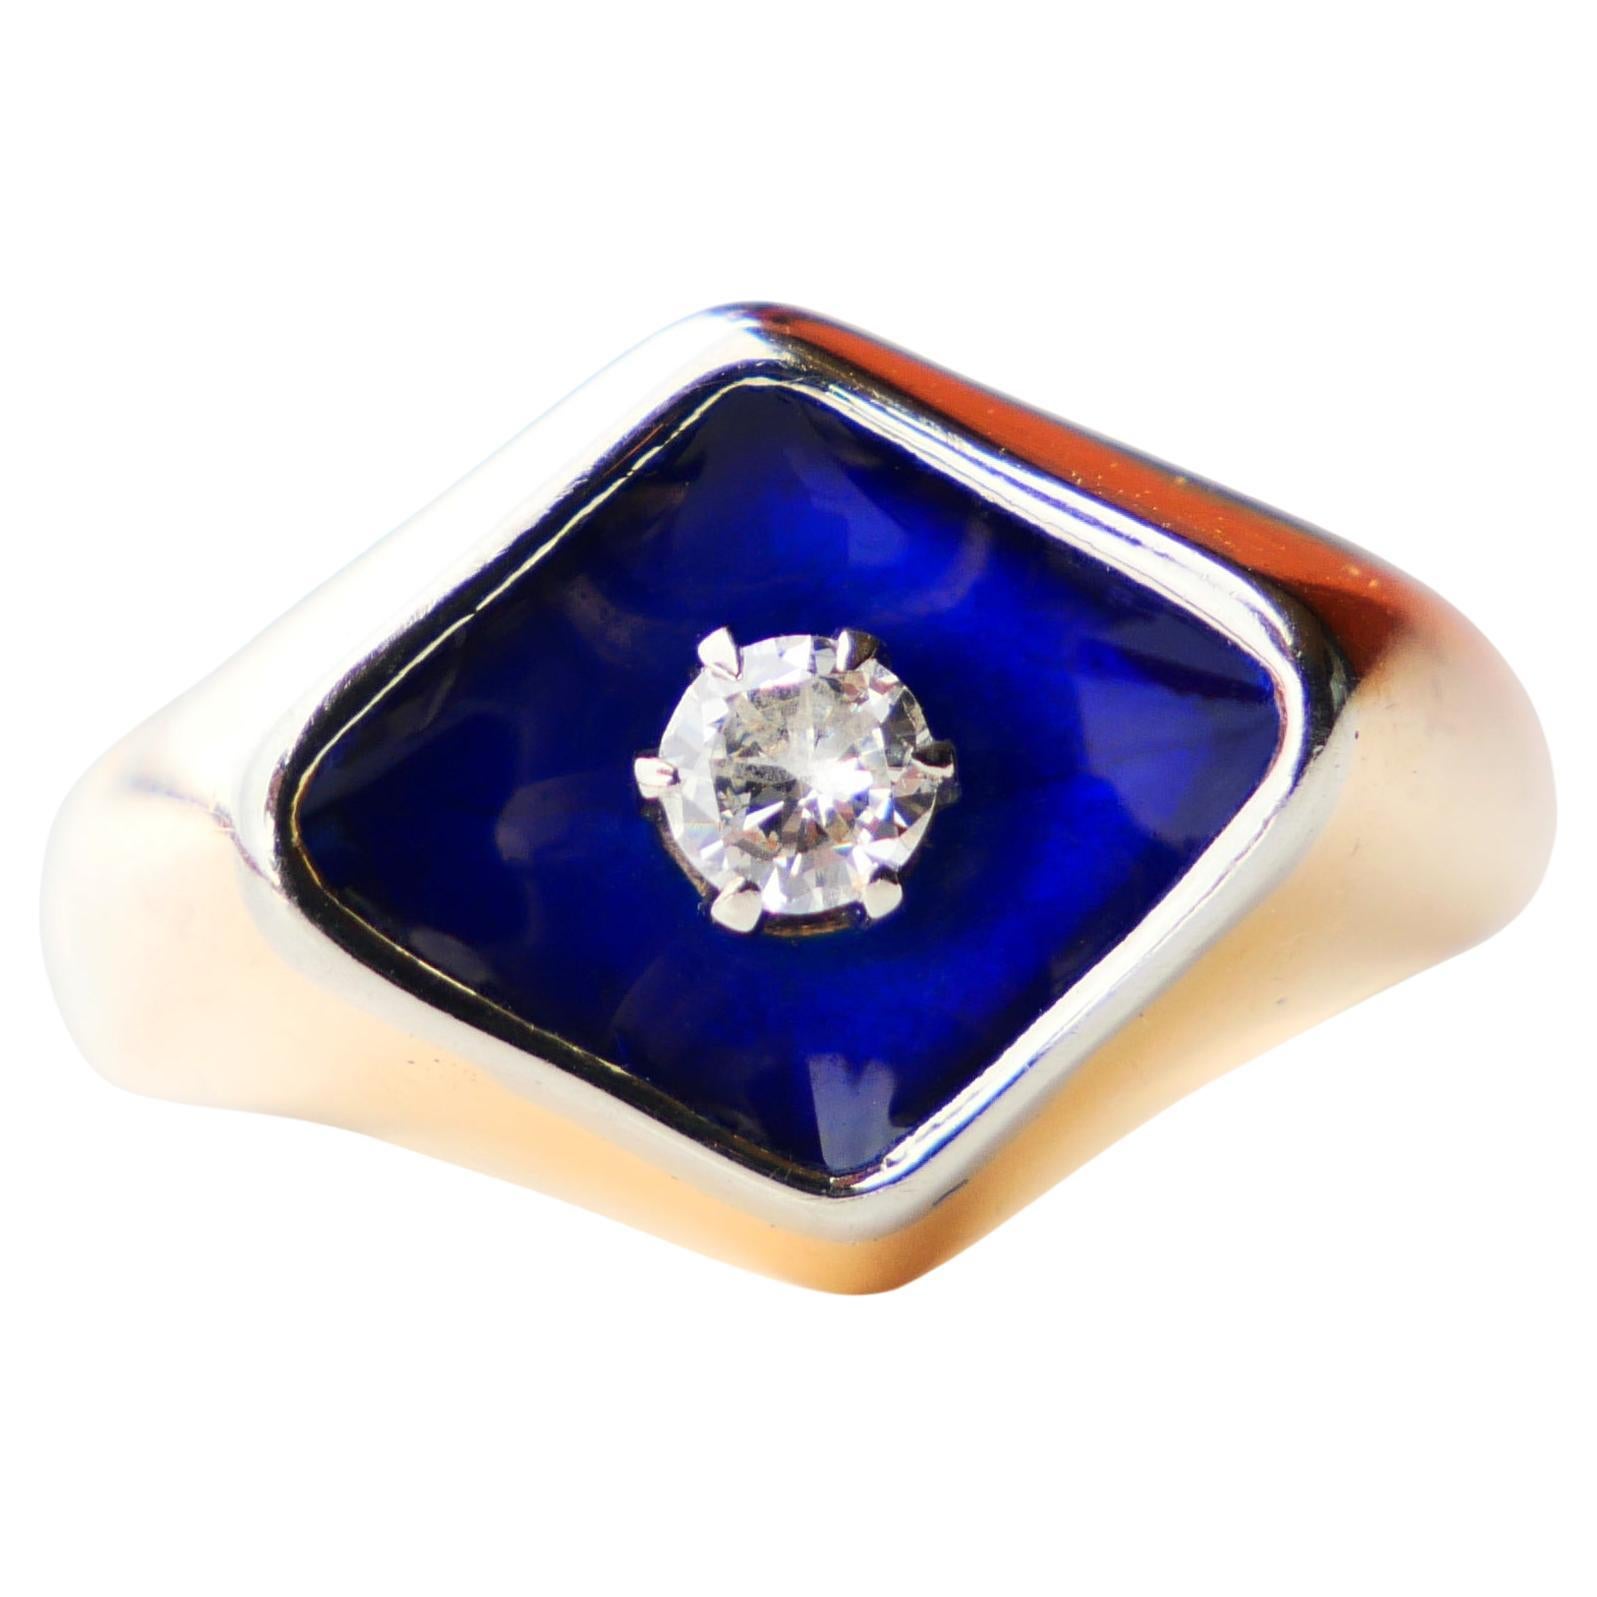 Old Ring Bague au Firmament Diamond Blue Enamel 18K Gold Ø5.75 US/ 5.5 gr For Sale